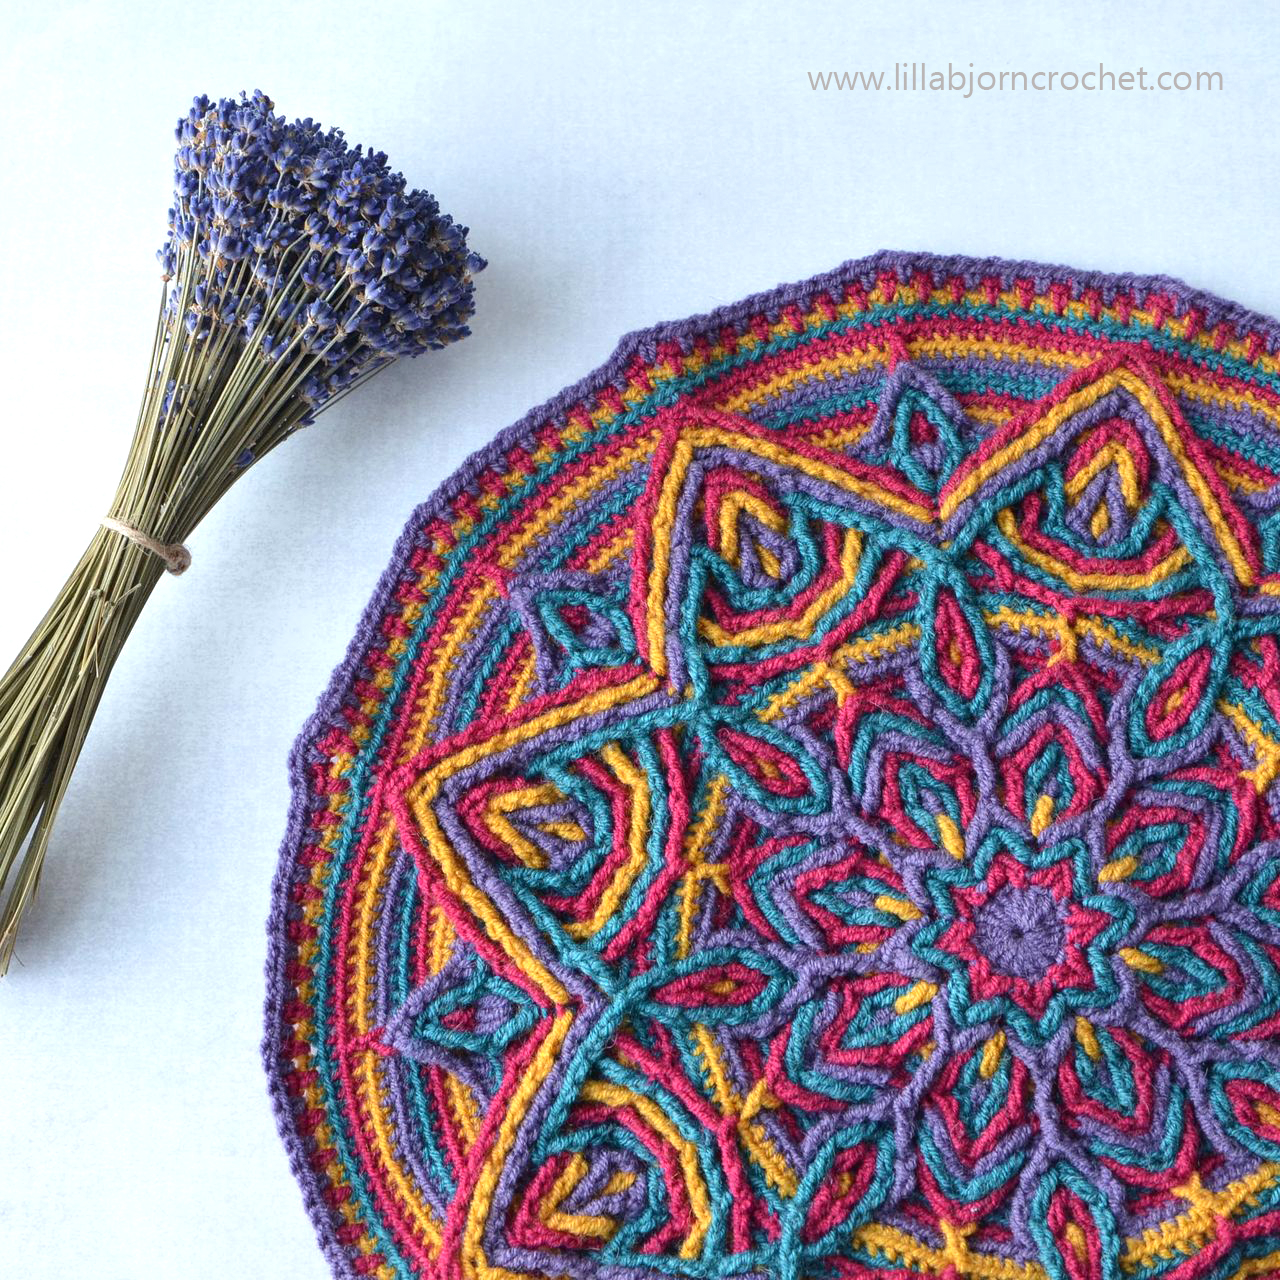 Mandala Embroidery Patterns Illusion Mandala New Overlay Crochet Pattern Lillabjrns Crochet